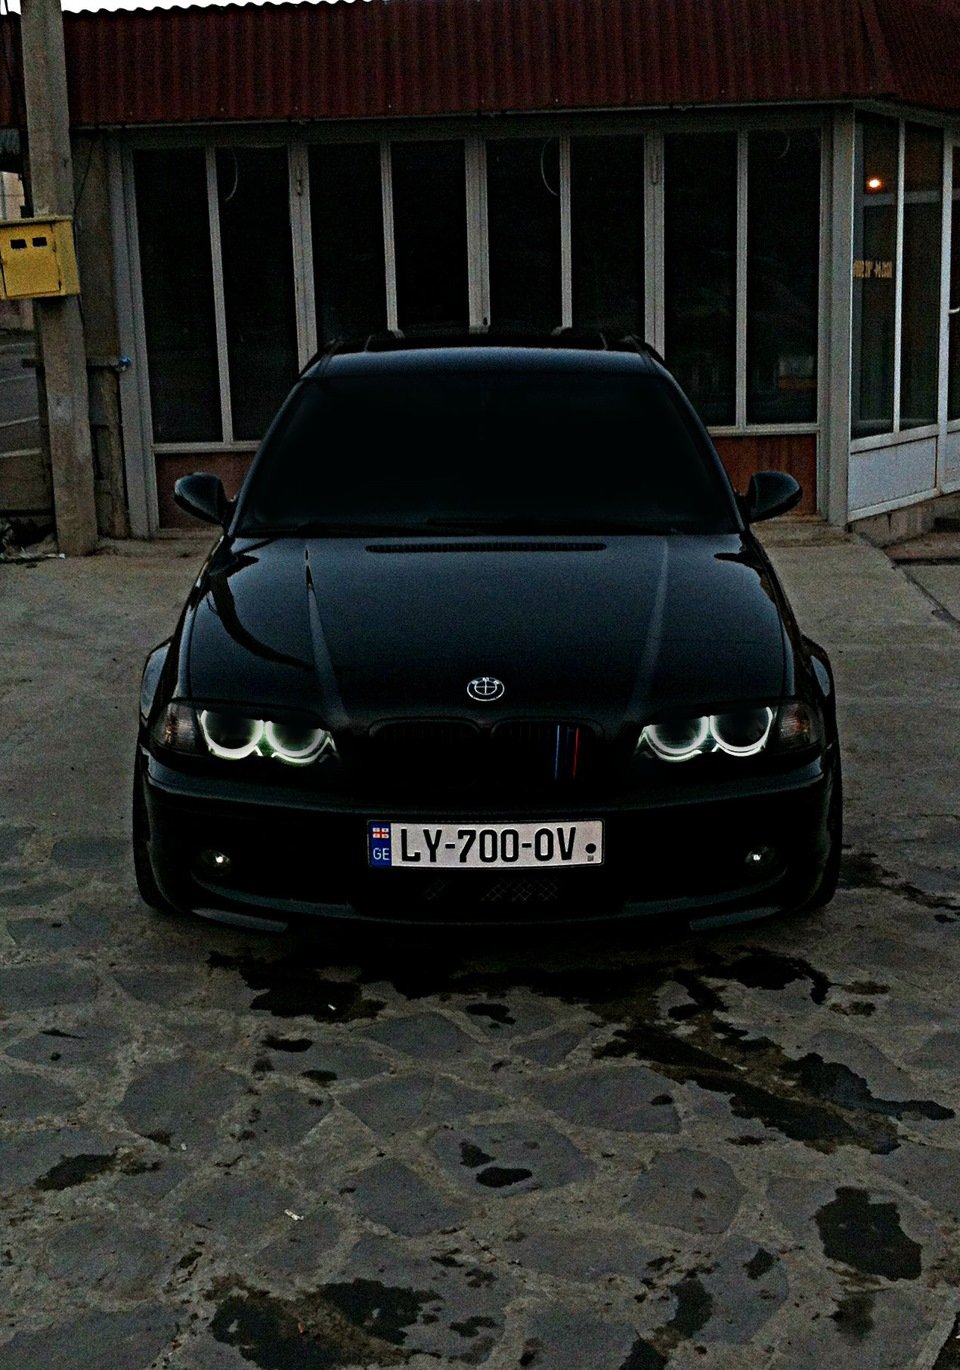 BMW e39 черная тонированная. БМВ е39 черная тонированная. БМВ м5 черная тонированная. Машина BMW e39 черный тонированный. Песня бмв с тонировкой мальчик прыгай